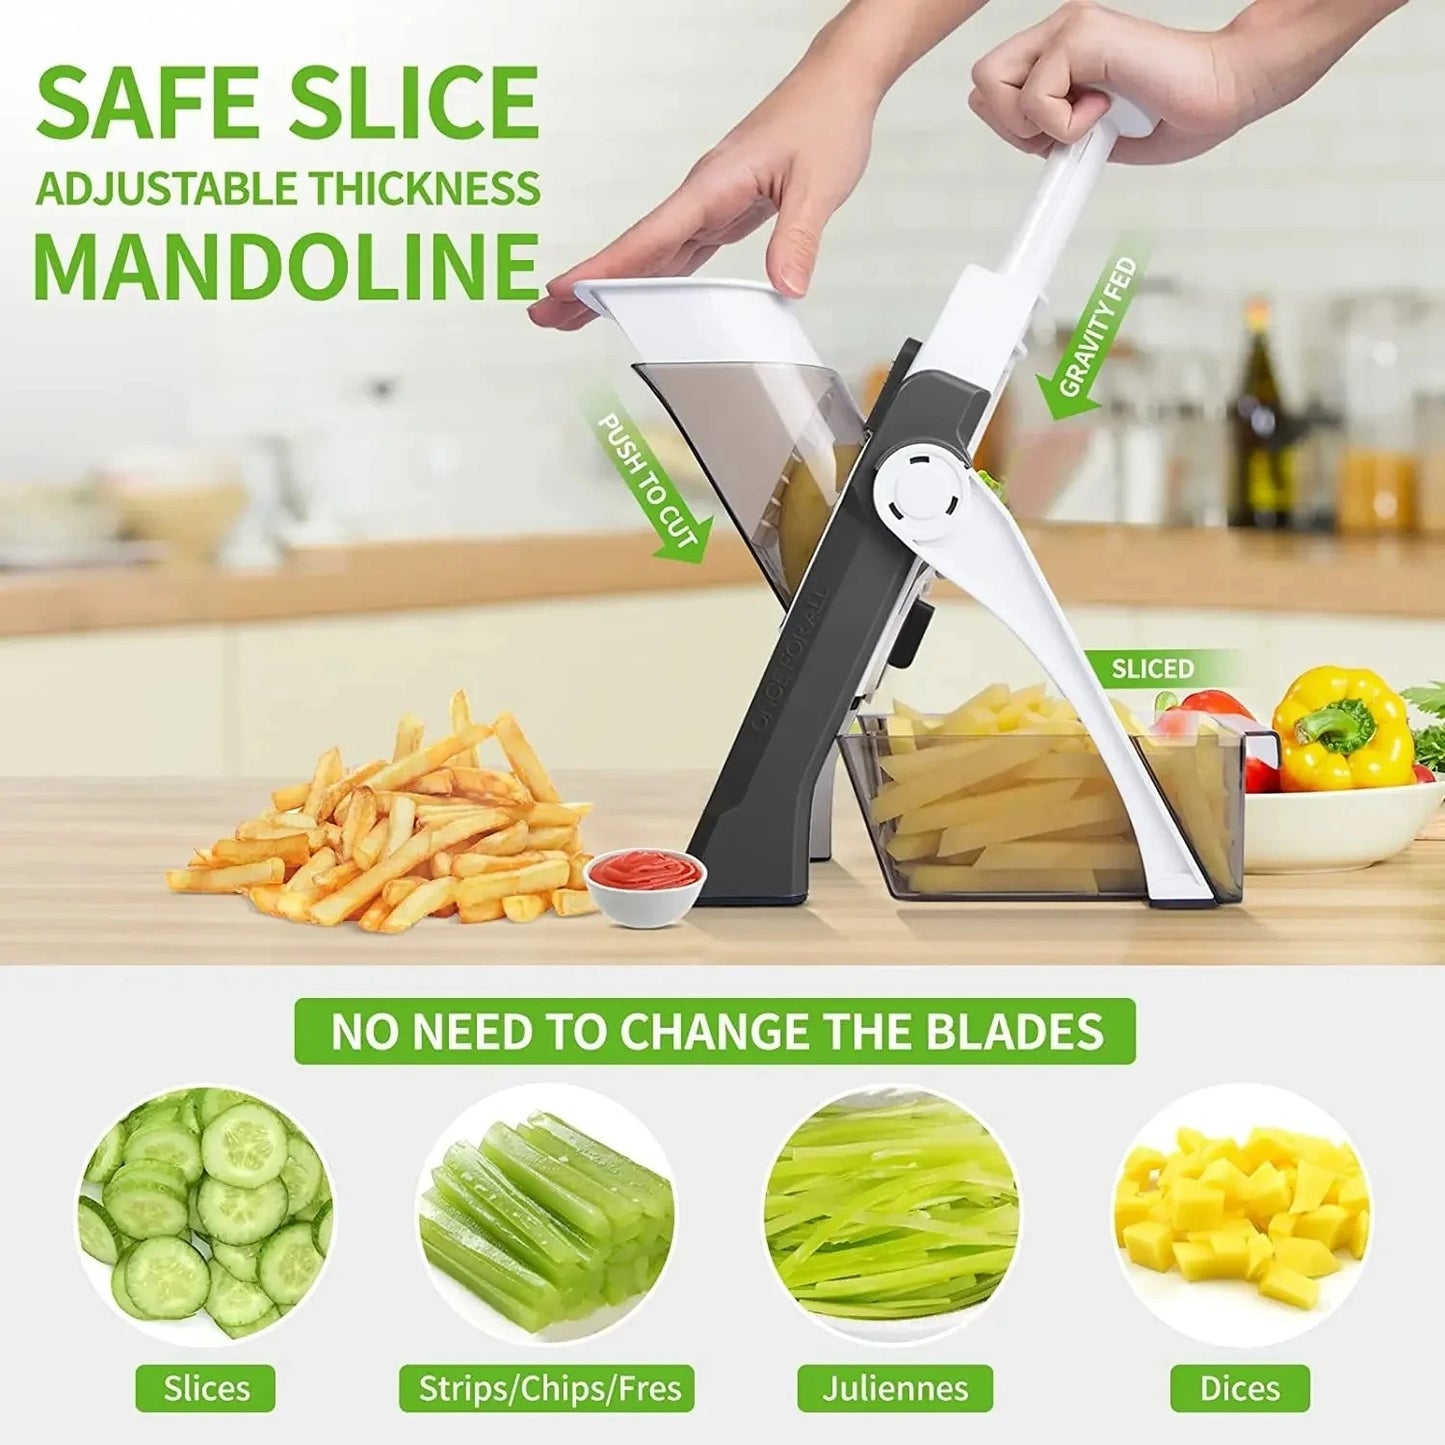 safe slice vegetable cutter 5 In 1